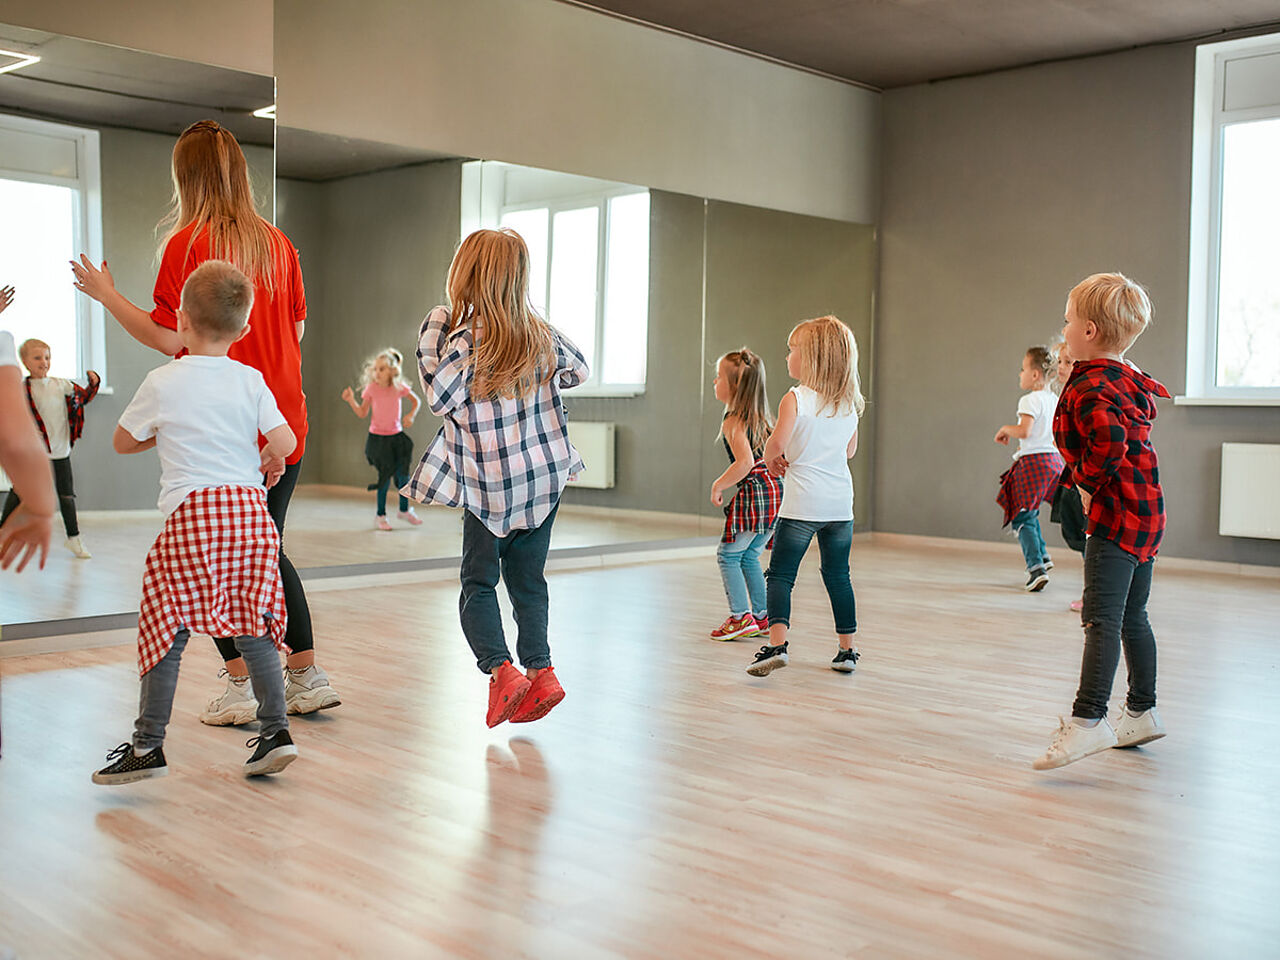 スタジオでダンスをしている子どもたちの画像